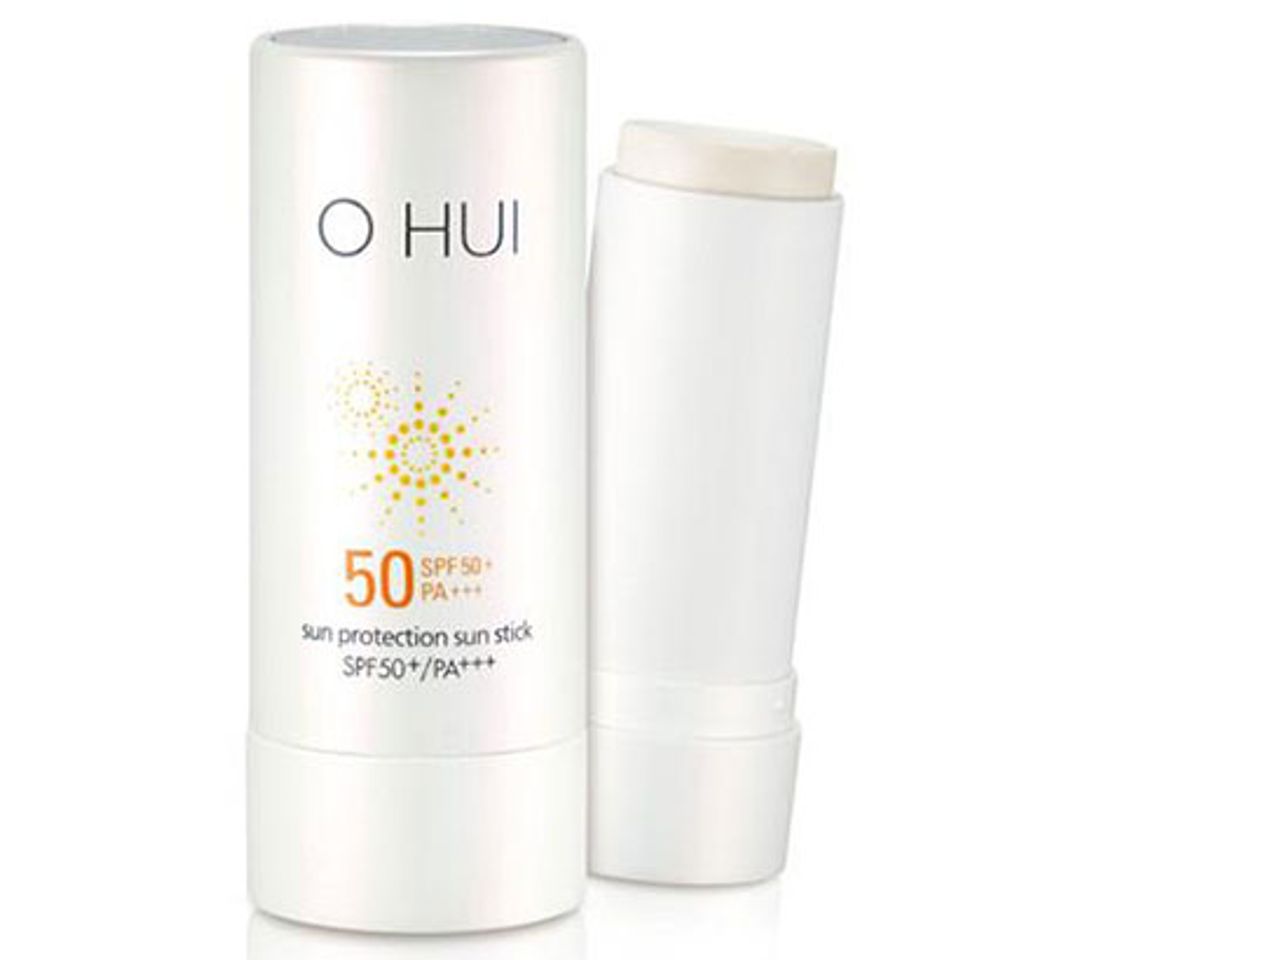  Kem chống nắng Ohui Sun Protection Sun Stick SPF50+ có dạng thỏi độc đáo